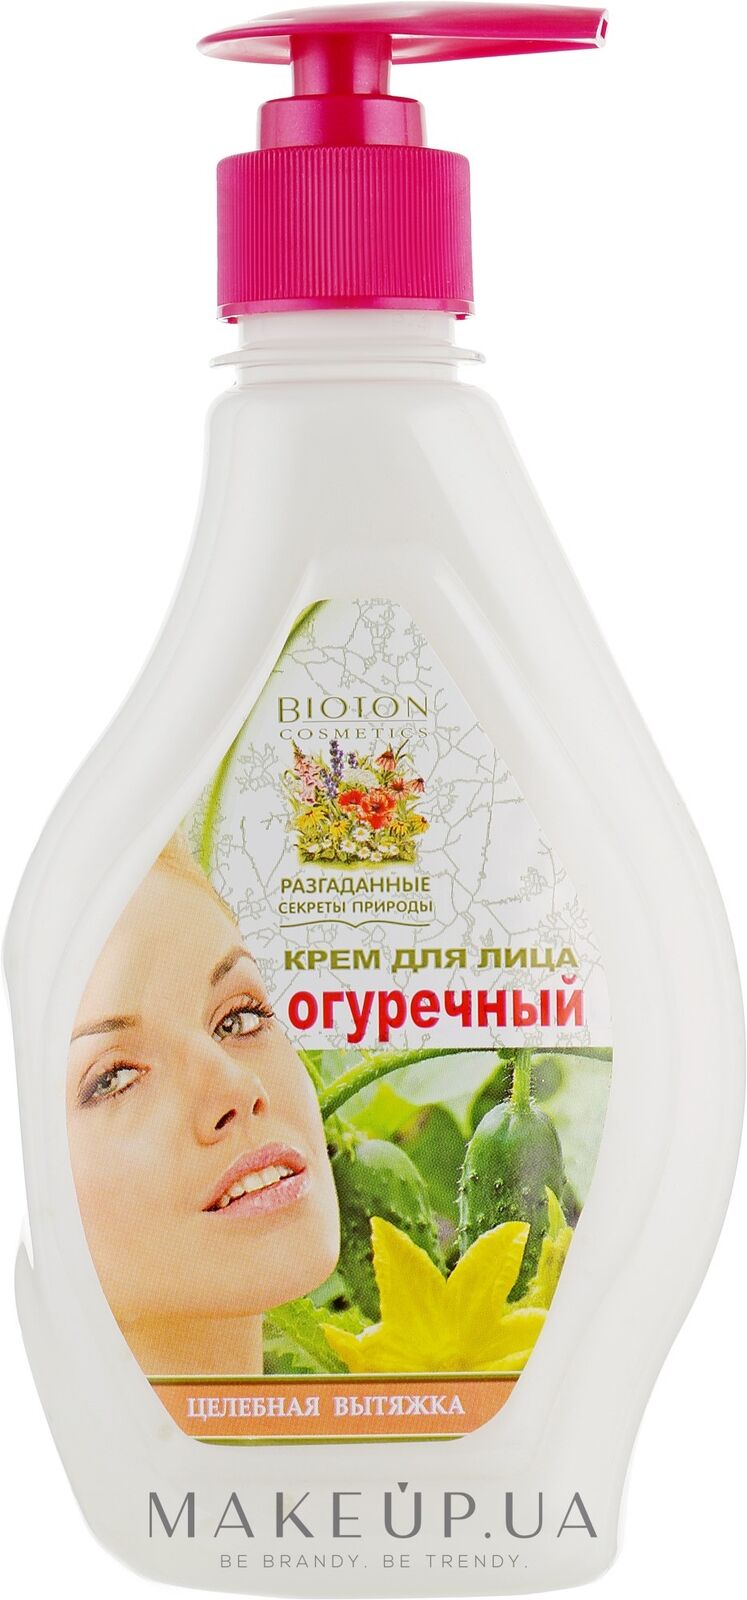 Bioton Cosmetics Secrets of Nature Unveiled Cucumber Face Cream 350ml